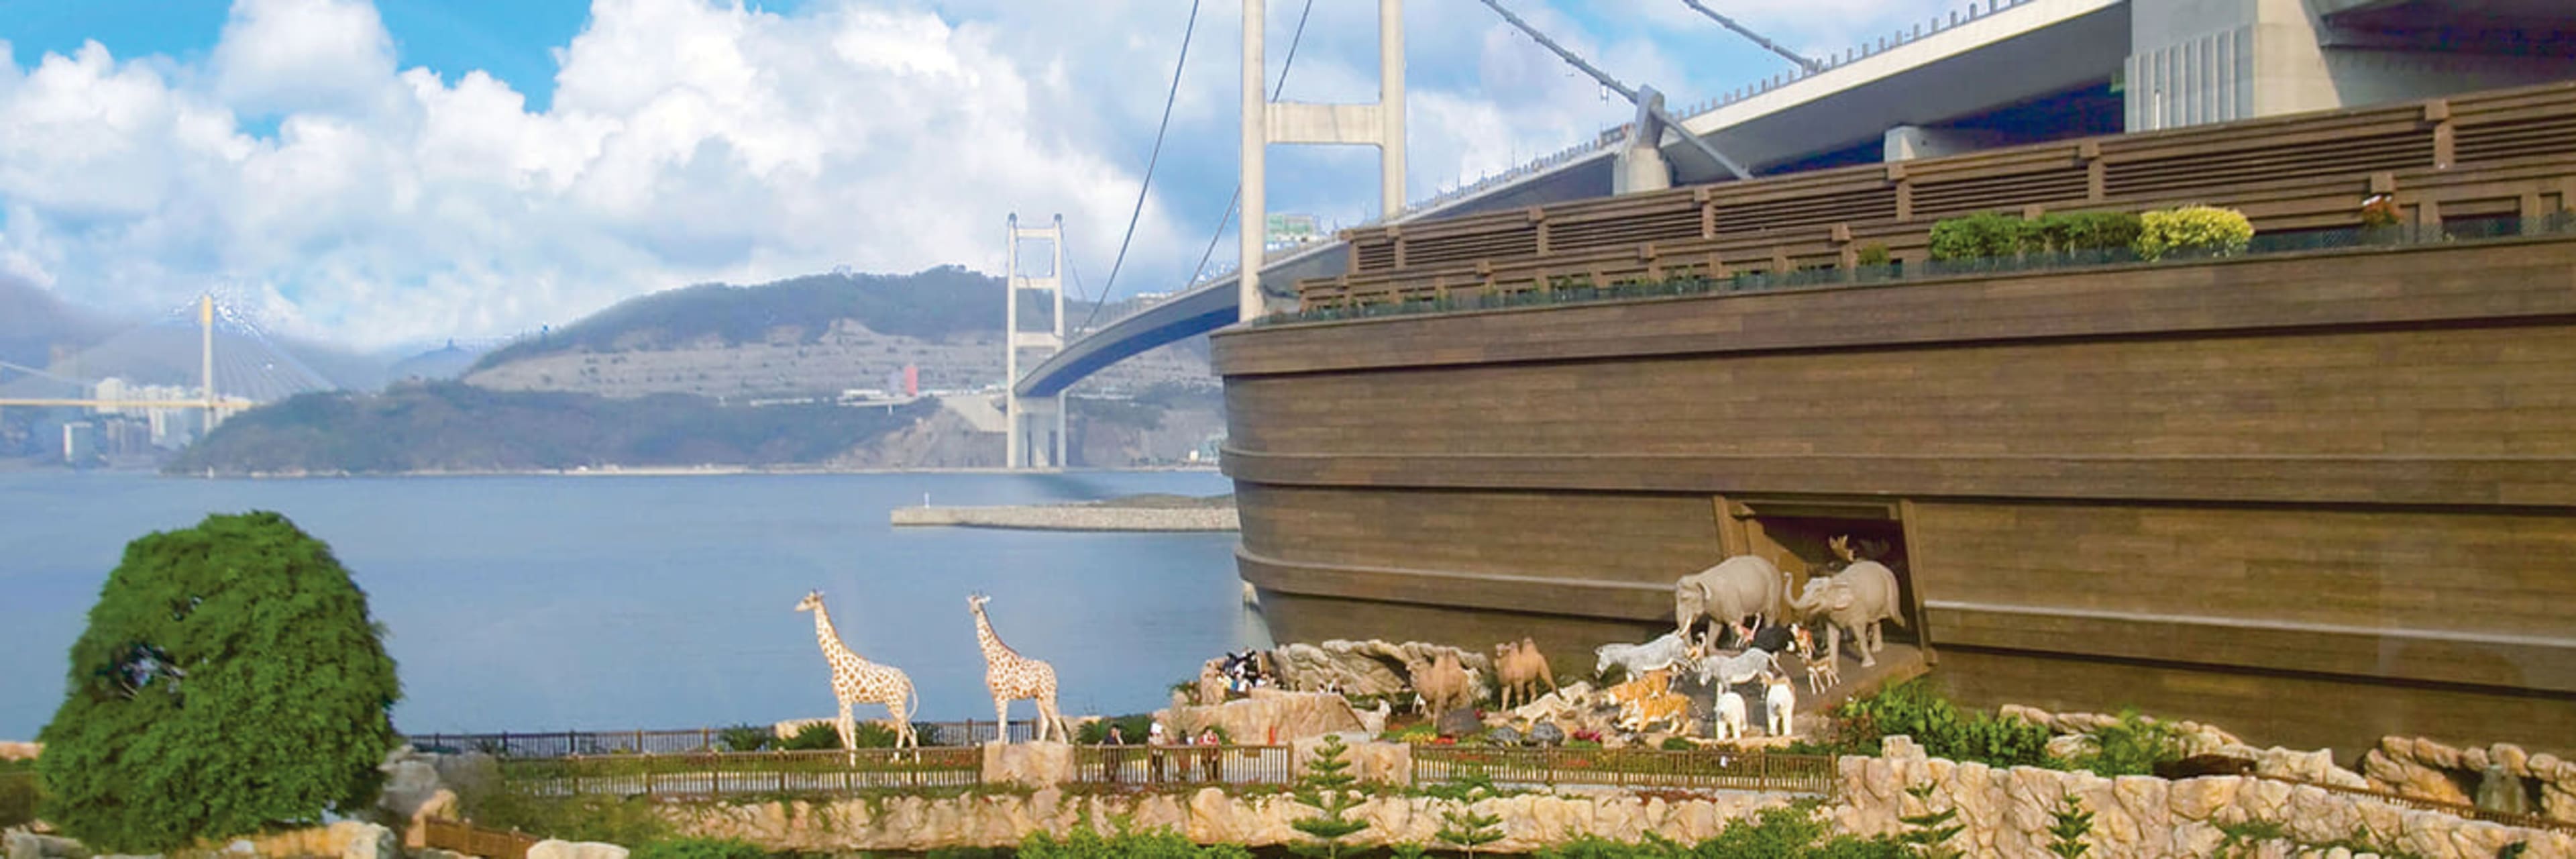 Noah's Ark Hong Kong